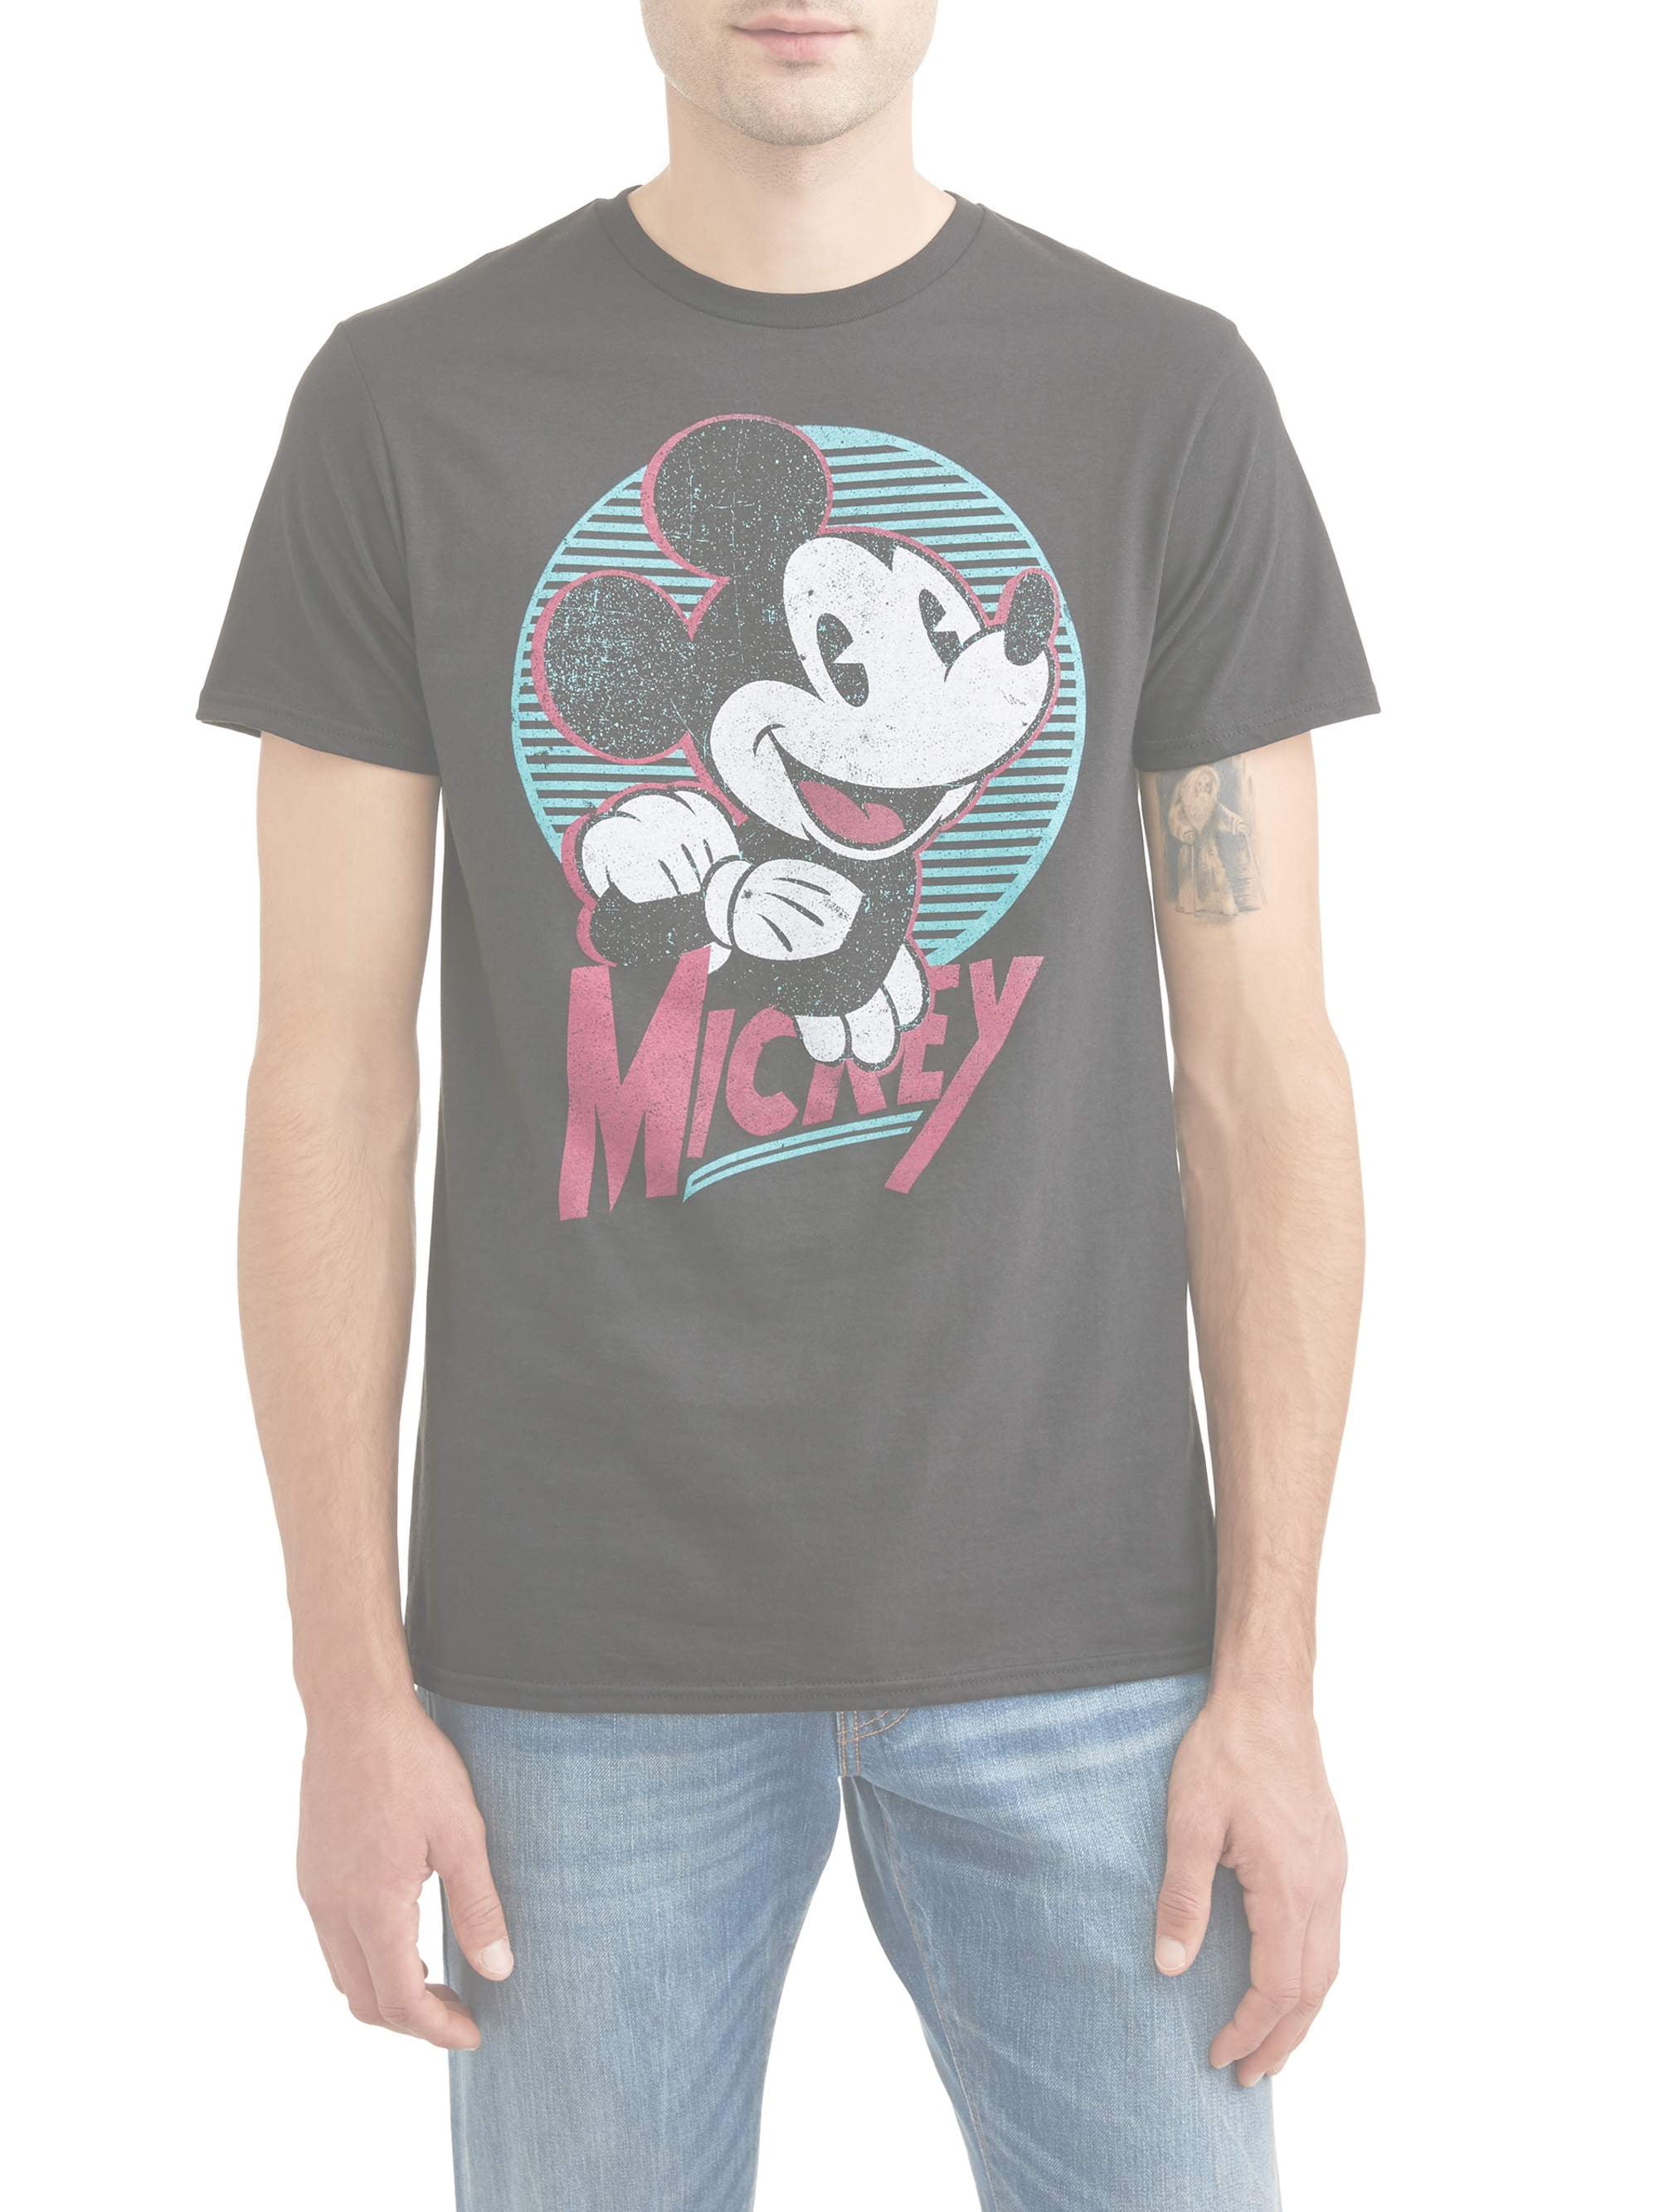 walmart mickey mouse sweatshirt